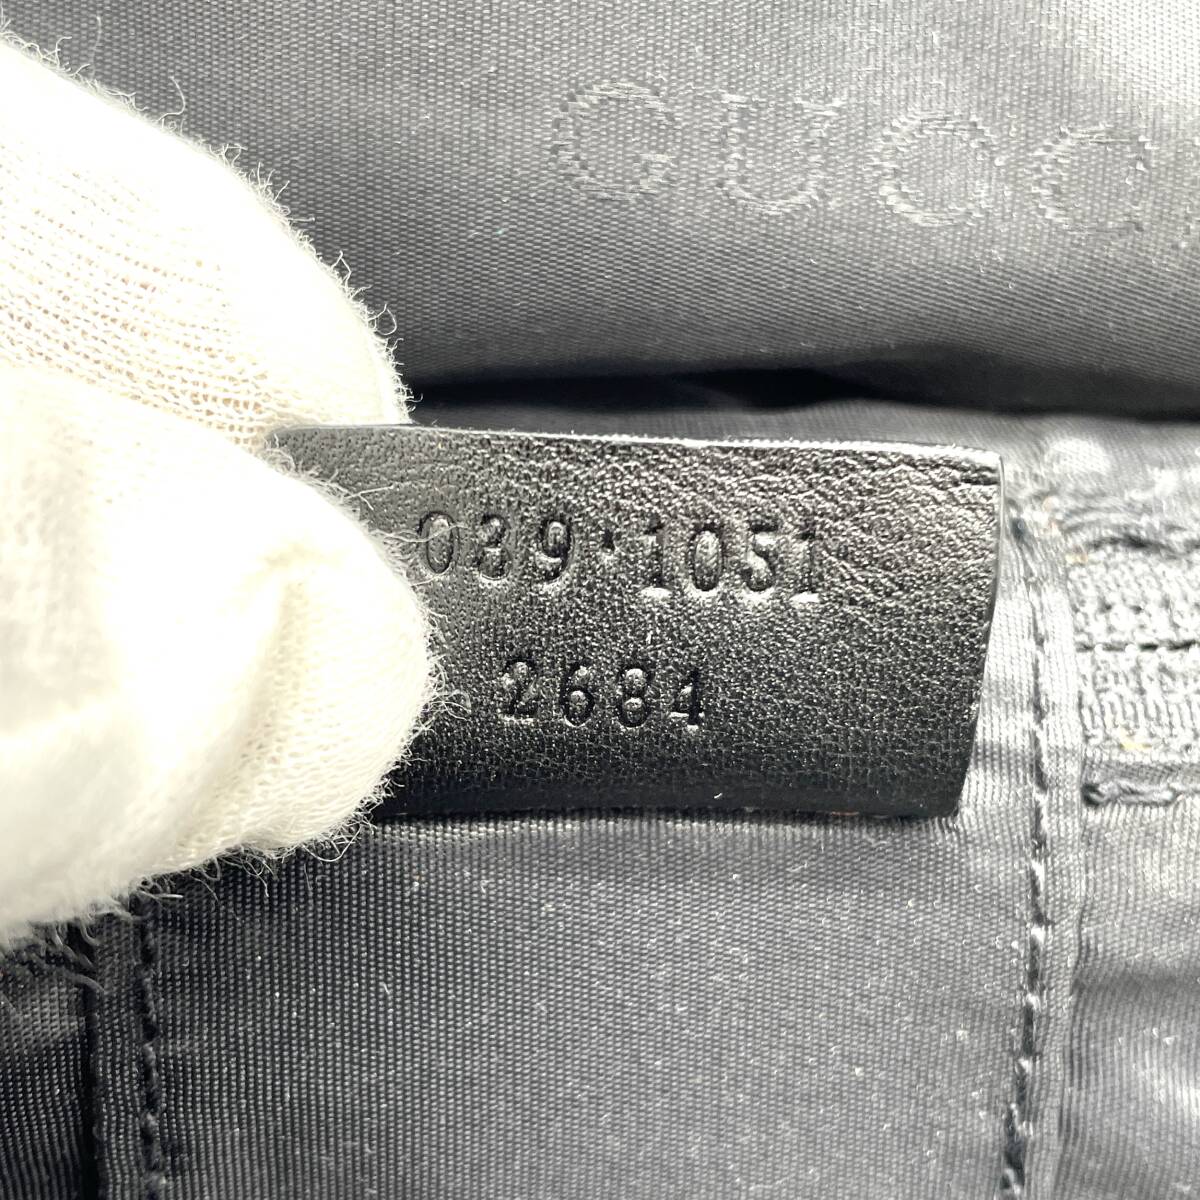 1 иен превосходный товар GUCCI Gucci GG парусина кожа косметичка ручная сумочка темно-коричневый черный 039 1051